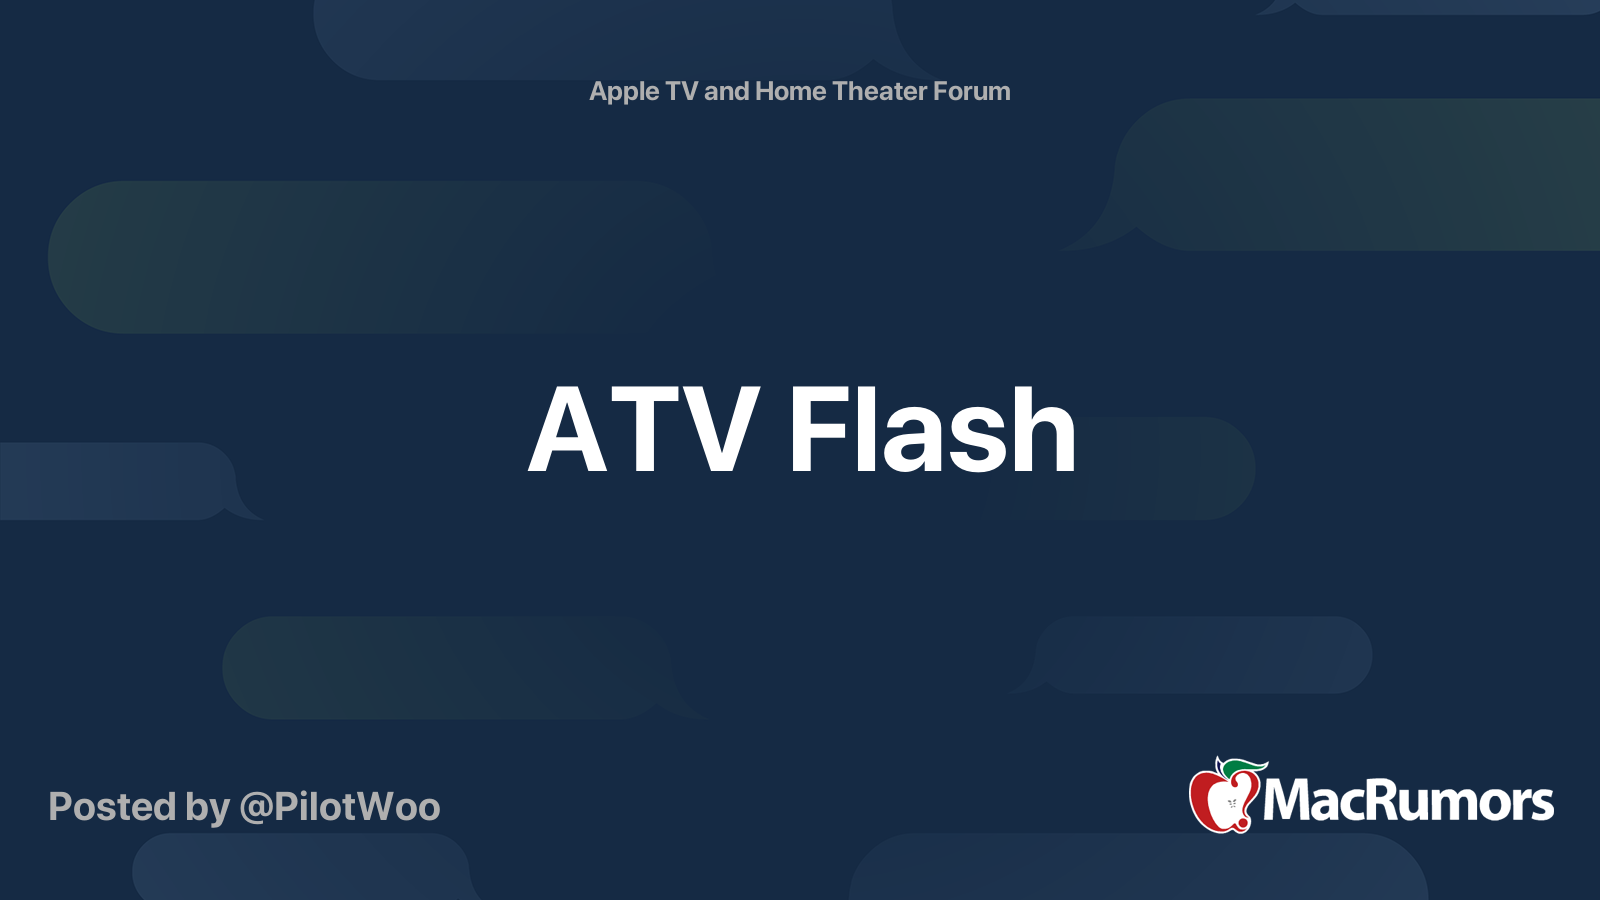 atv flash free download mac